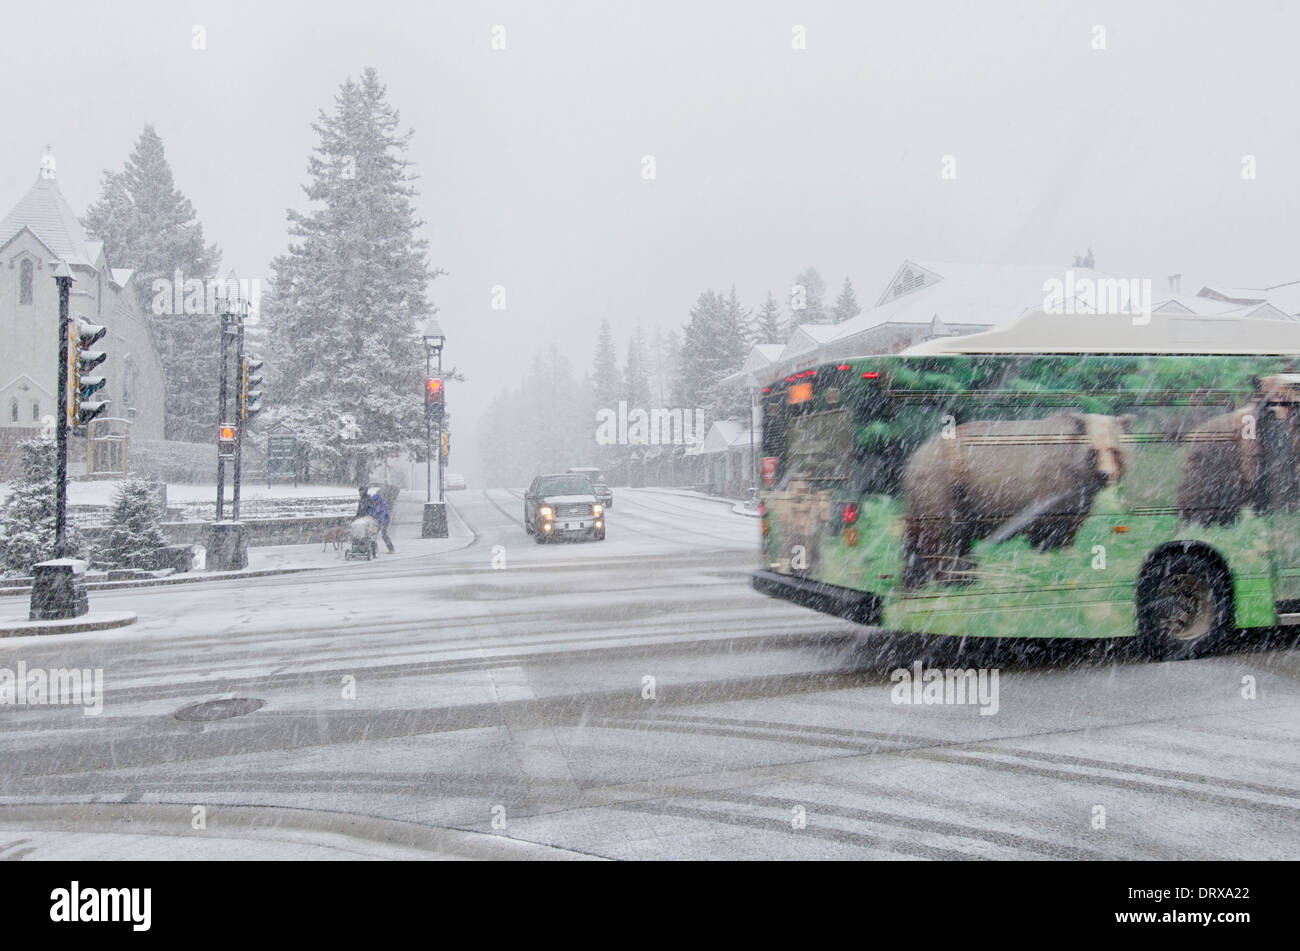 Bär aussehen. Eine verzierte Bus vorbei während ein Schneegestöber in Banff, Kanada Stockfoto